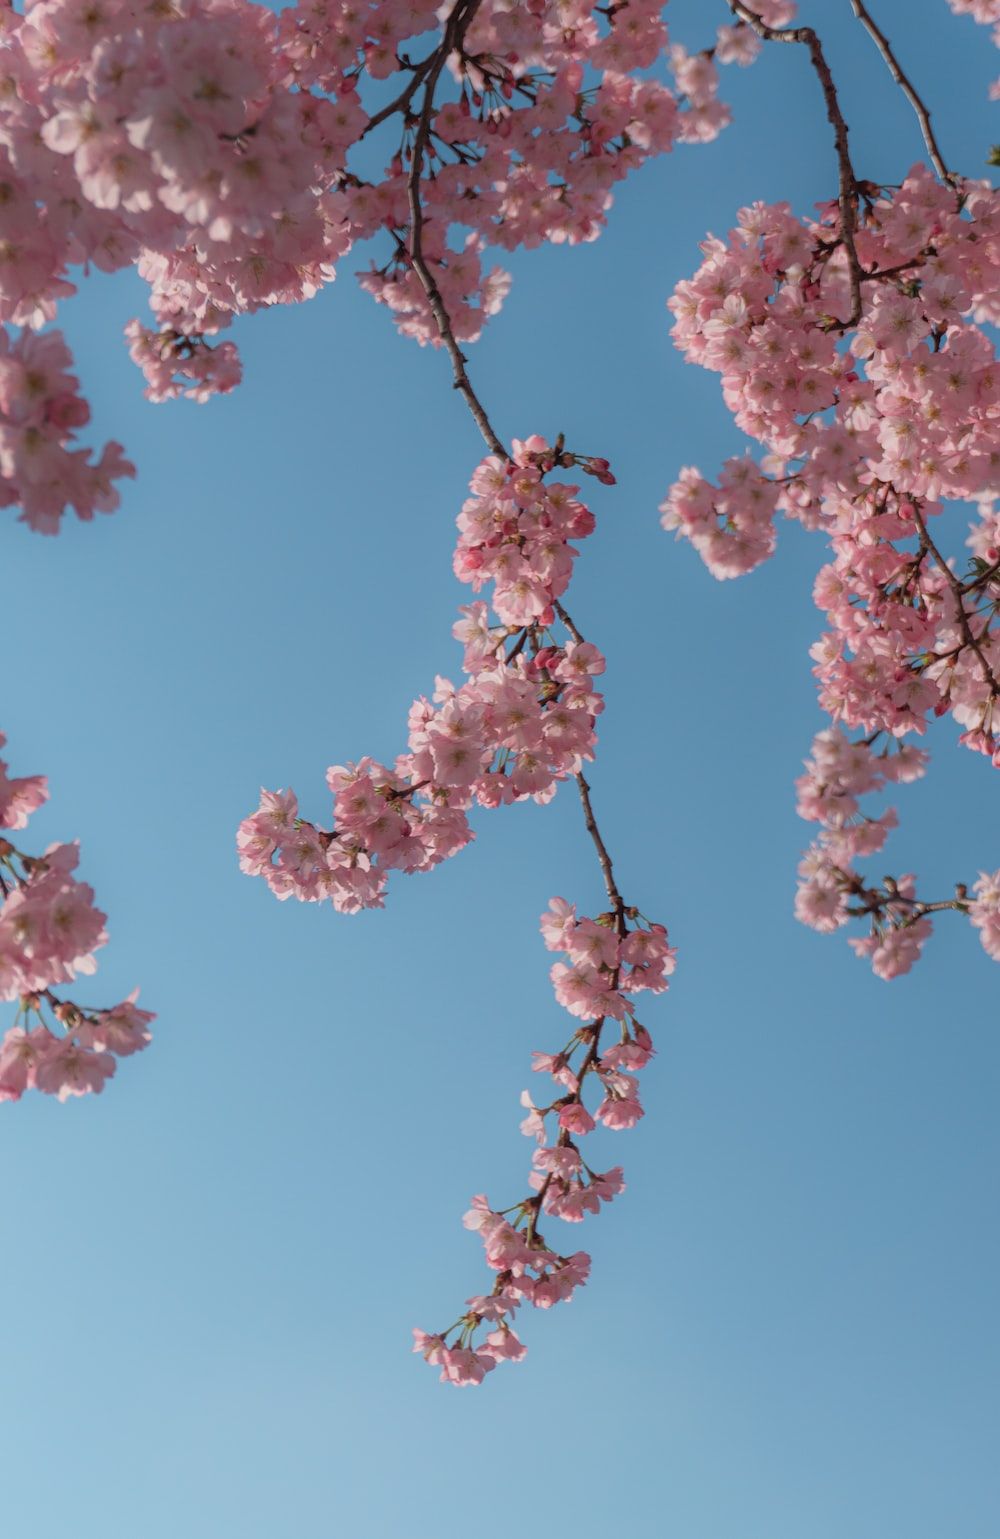 Blue Hintergrundbild 1000x1539. pink cherry blossom under blue sky during daytime photo